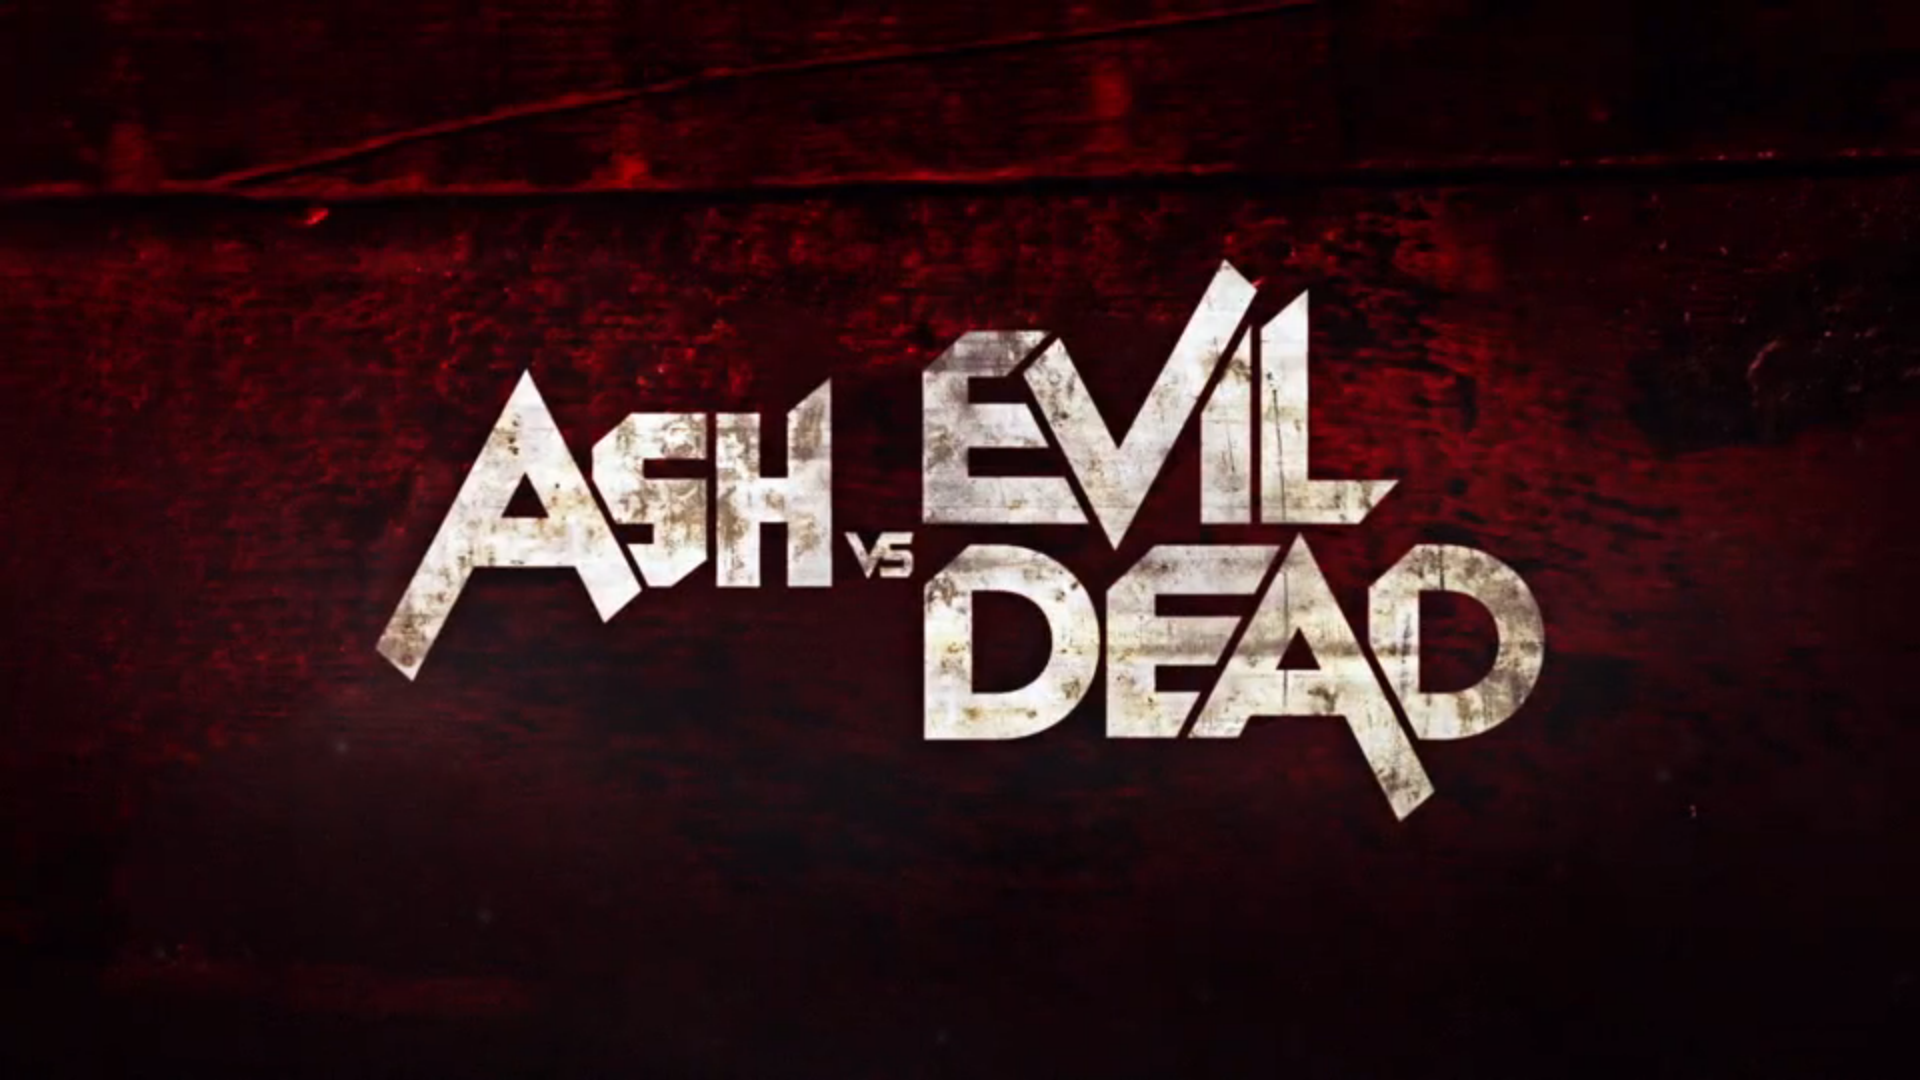 Ash Vs Evil Dead Wallpaper Just Good Vibe